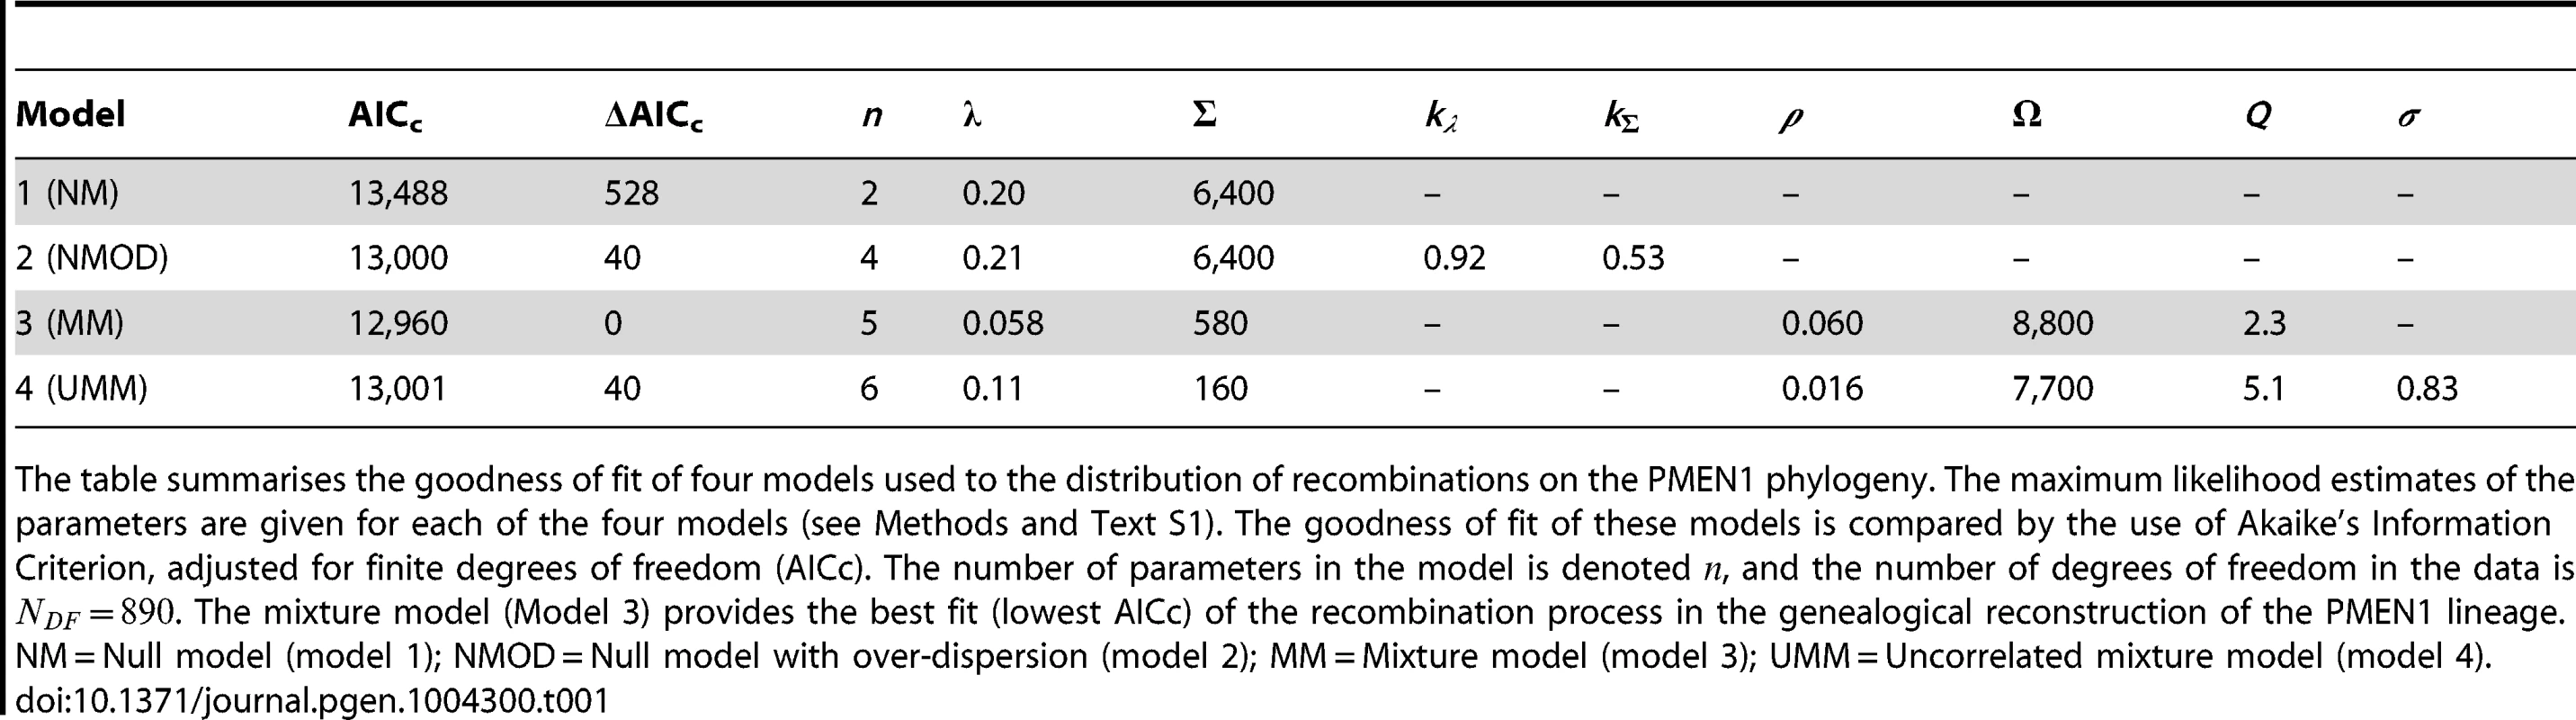 Model comparison for PMEN1 data fit.